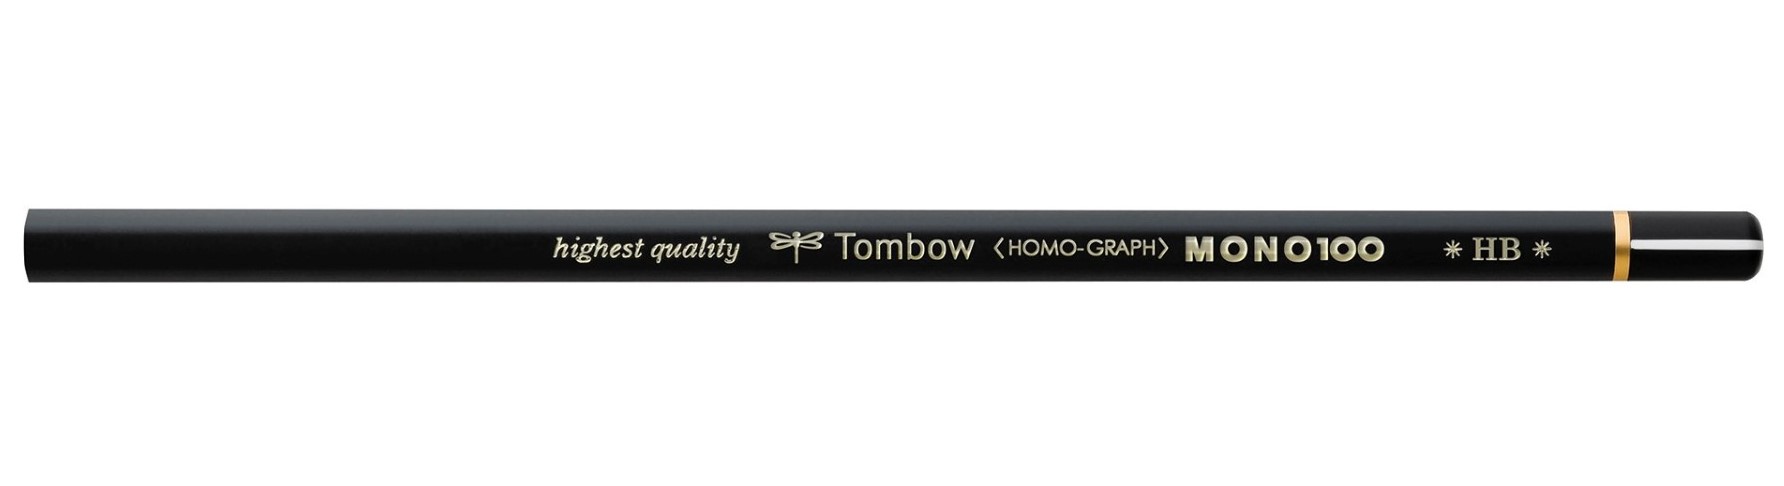 Blyant MONO 100 HB, 12stk Tombow MONO-100-HB